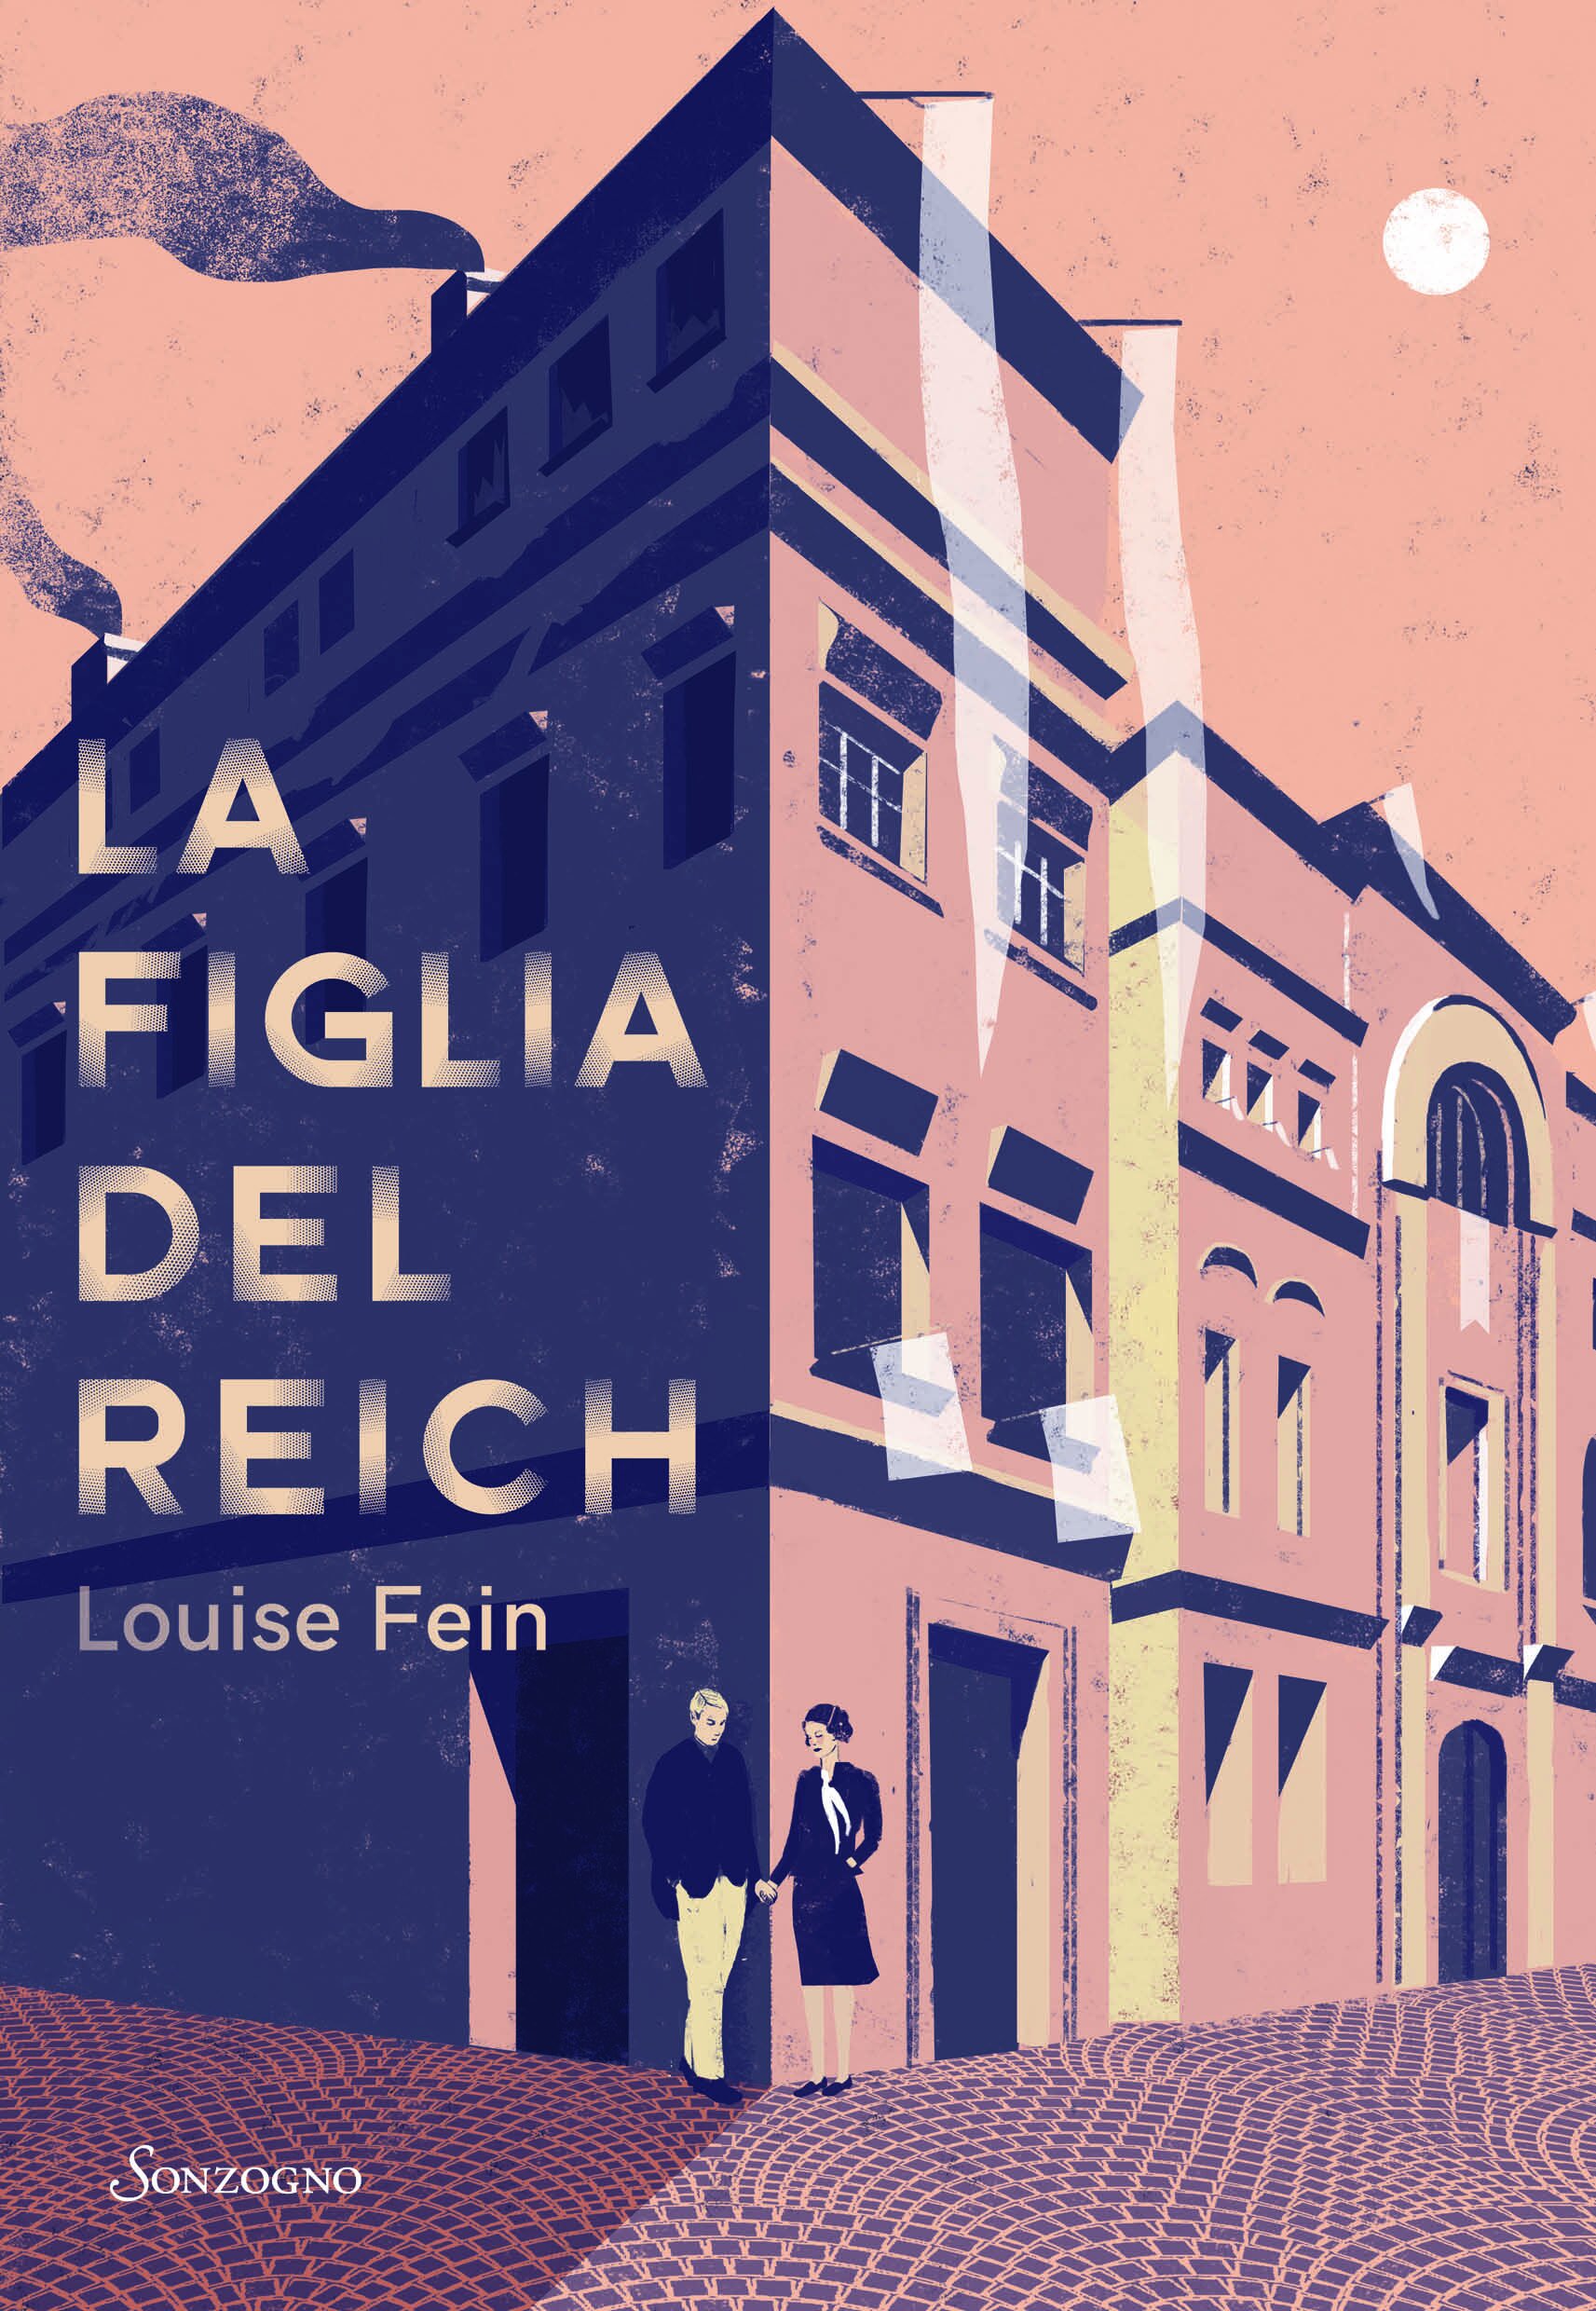 Books by Louise Fein — Louise Fein